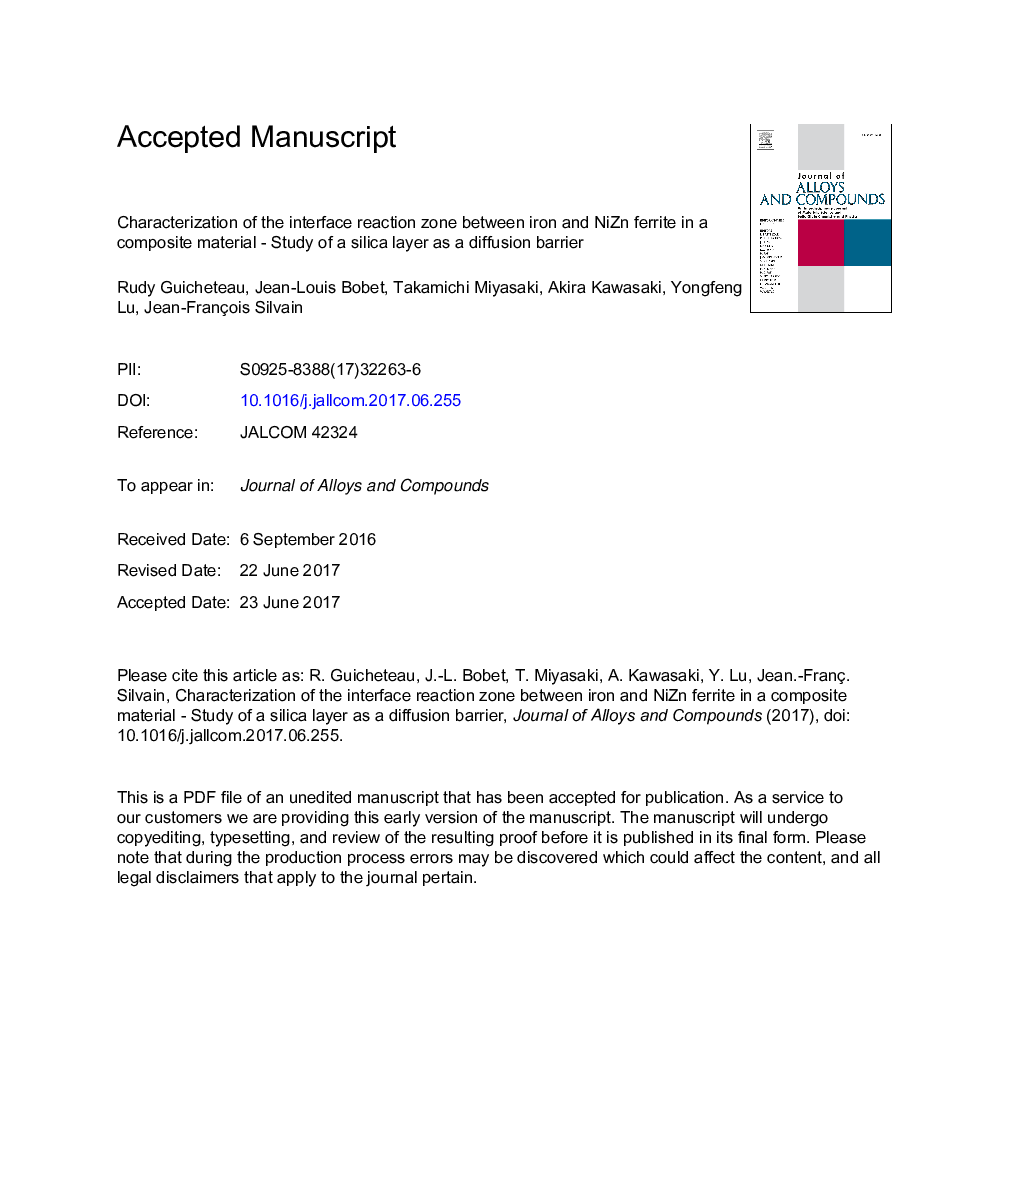 تعریف منطقه ی واکنش ی بین آهن و نیتروژن فریت در مواد کامپوزیتی - مطالعه ی یک لایه سیلیس به عنوان یک مانع انتشار 